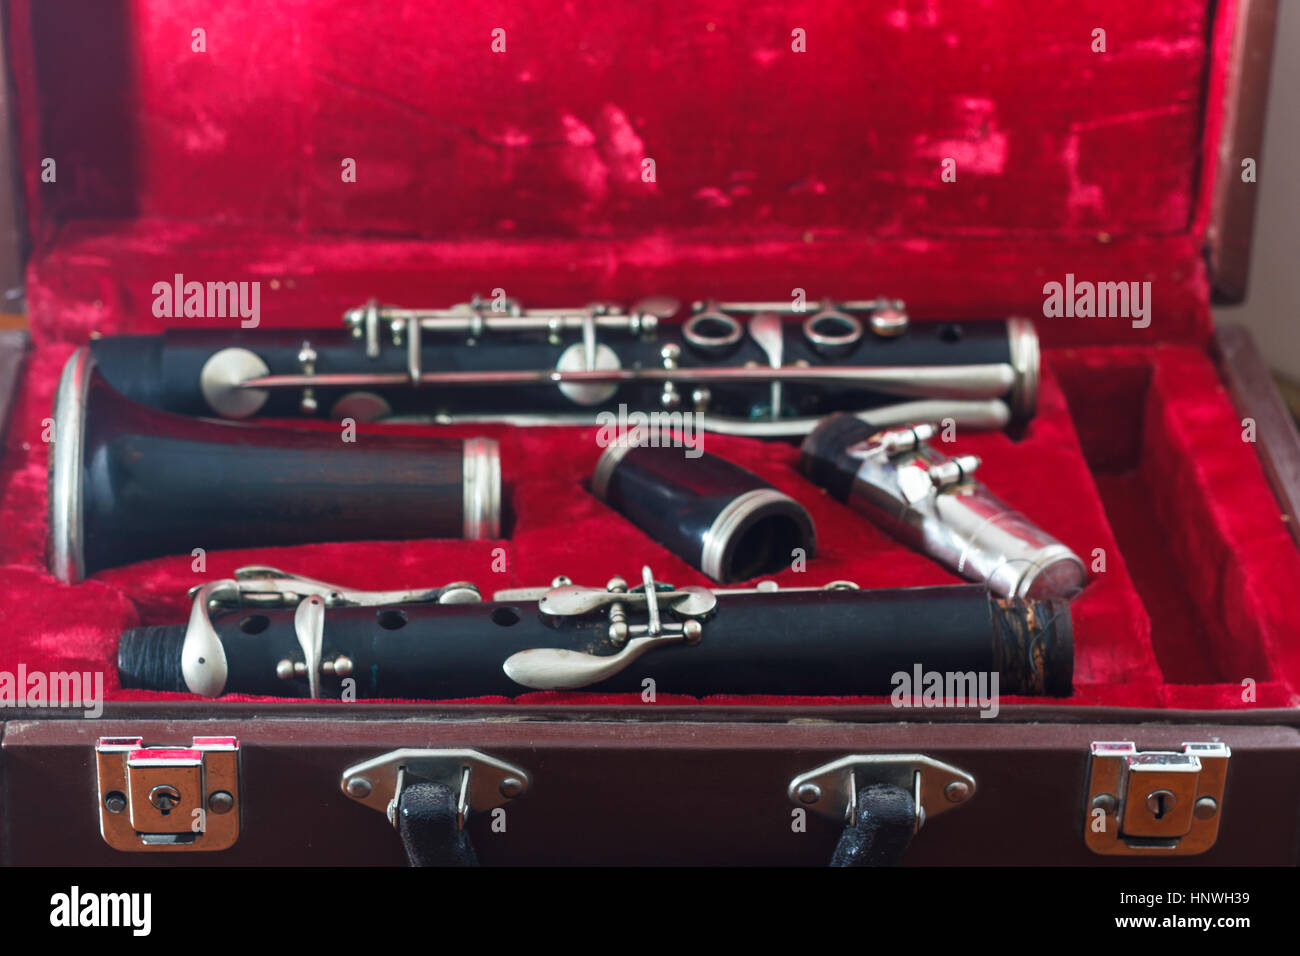 La clarinette, instrument à vent, démonté et placé dans le cas Banque D'Images